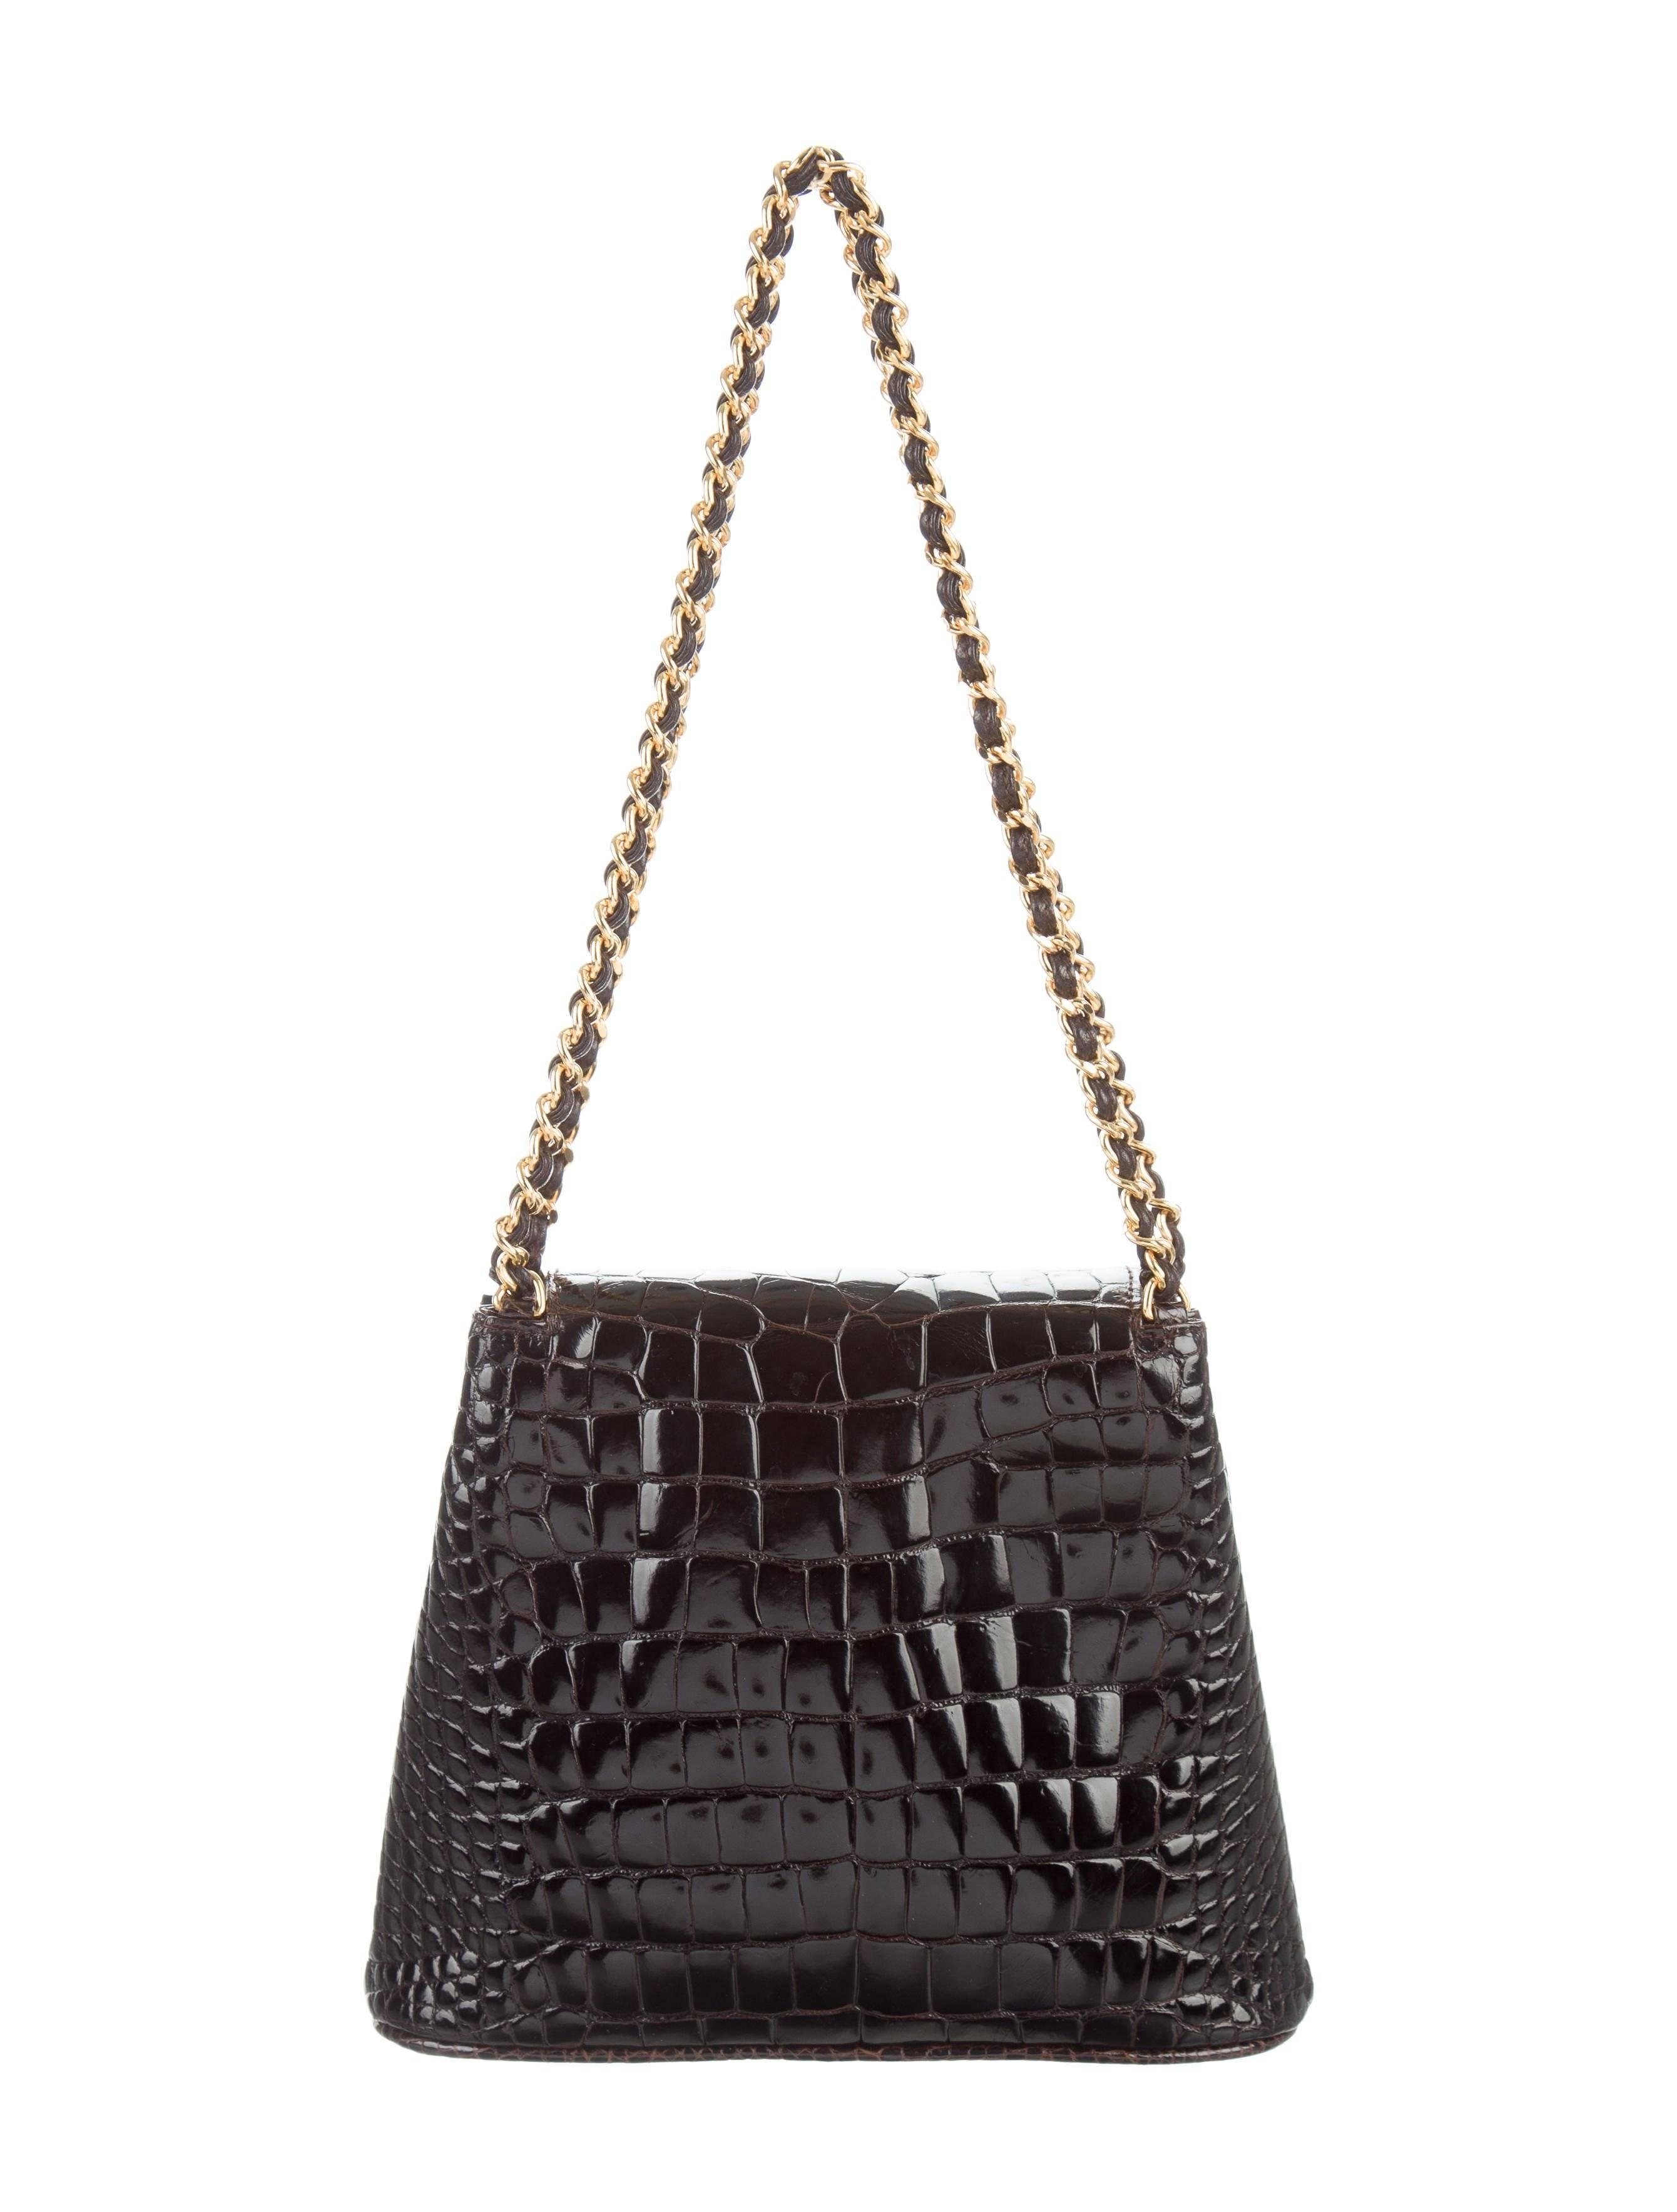 Black Chanel Dark Chocolate Crocodile CC Clutch Evening Satchel Flap Bag W/Accessories